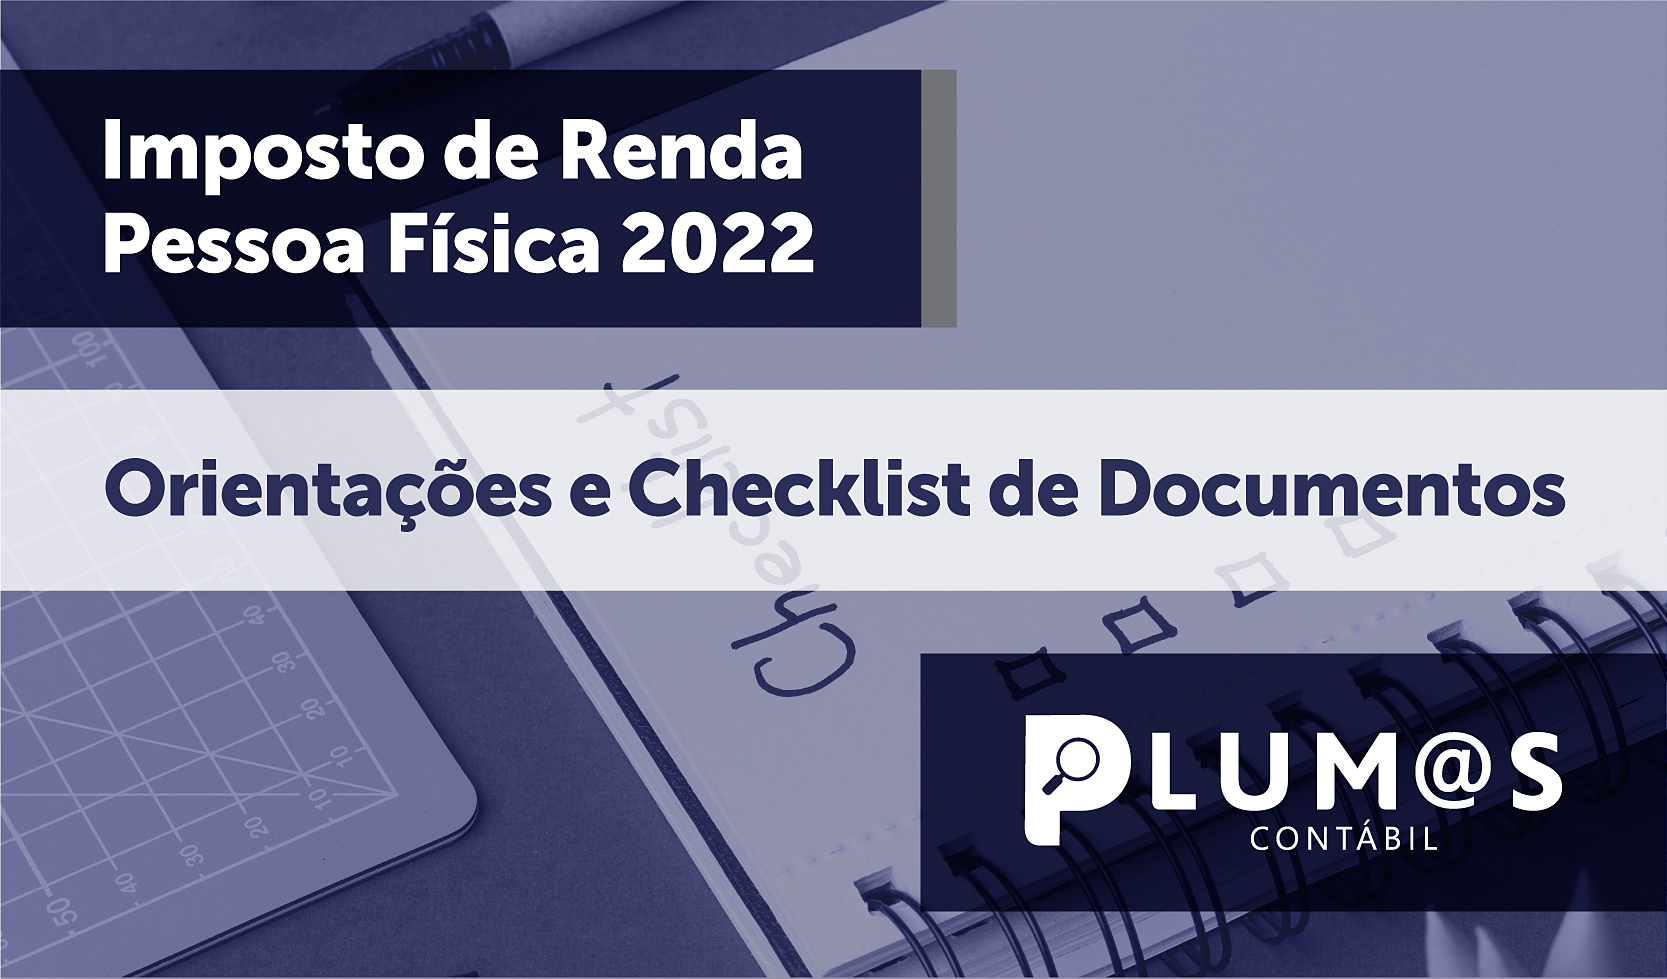 Orientacoes e Checklist IR2022_Whats - Imposto de Renda Pessoa Física 2022 – Orientações e Checklist de Documentos